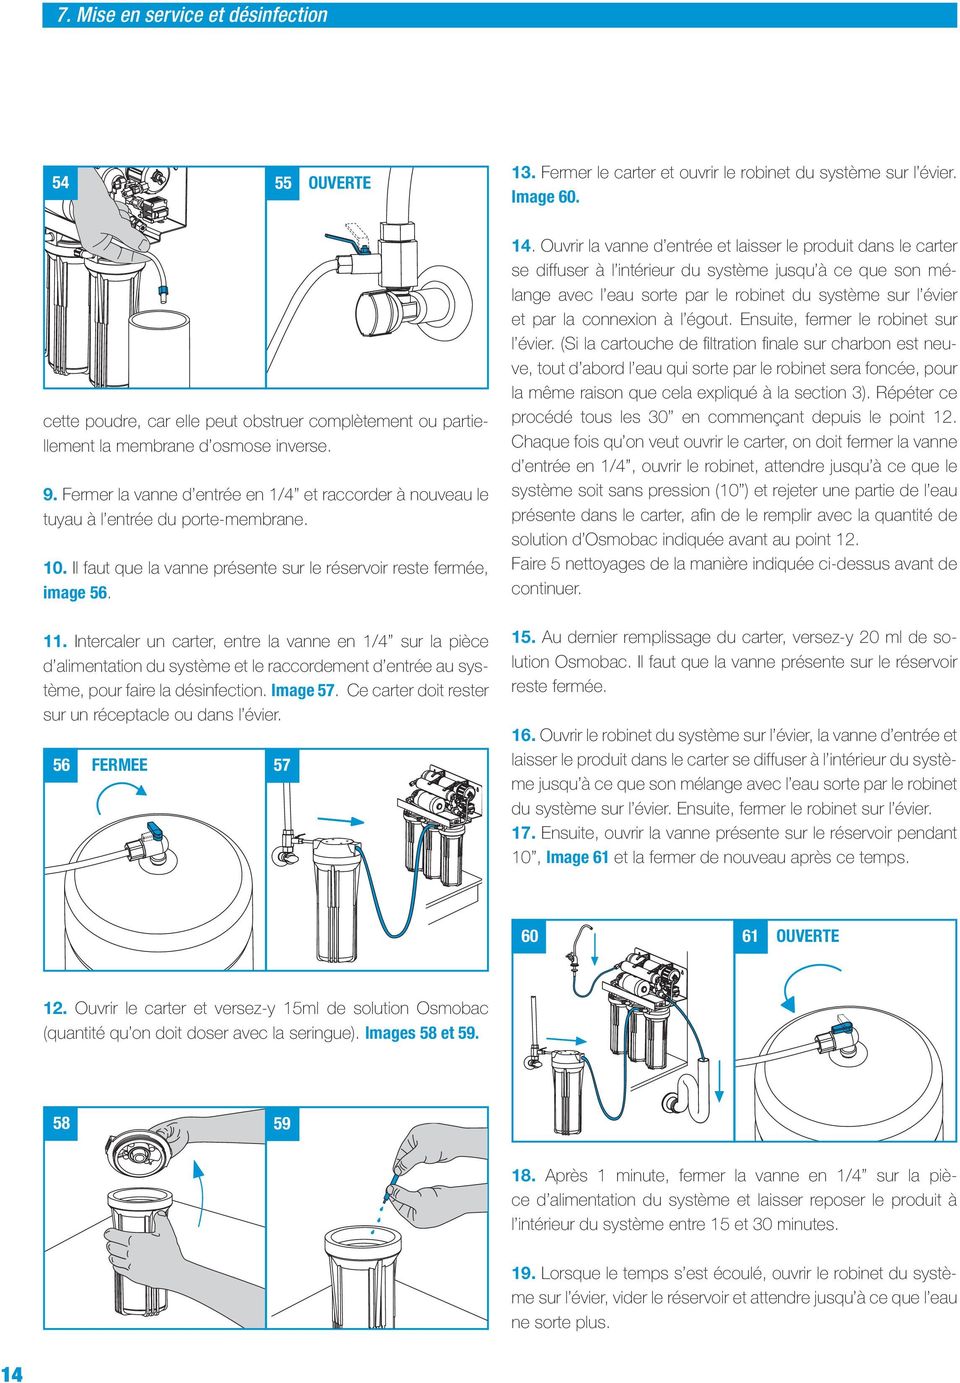 . Intercaler un carter, entre la vanne en /4 sur la pièce d alimentation du système et le raccordement d entrée au système, pour faire la désinfection. Image 57.